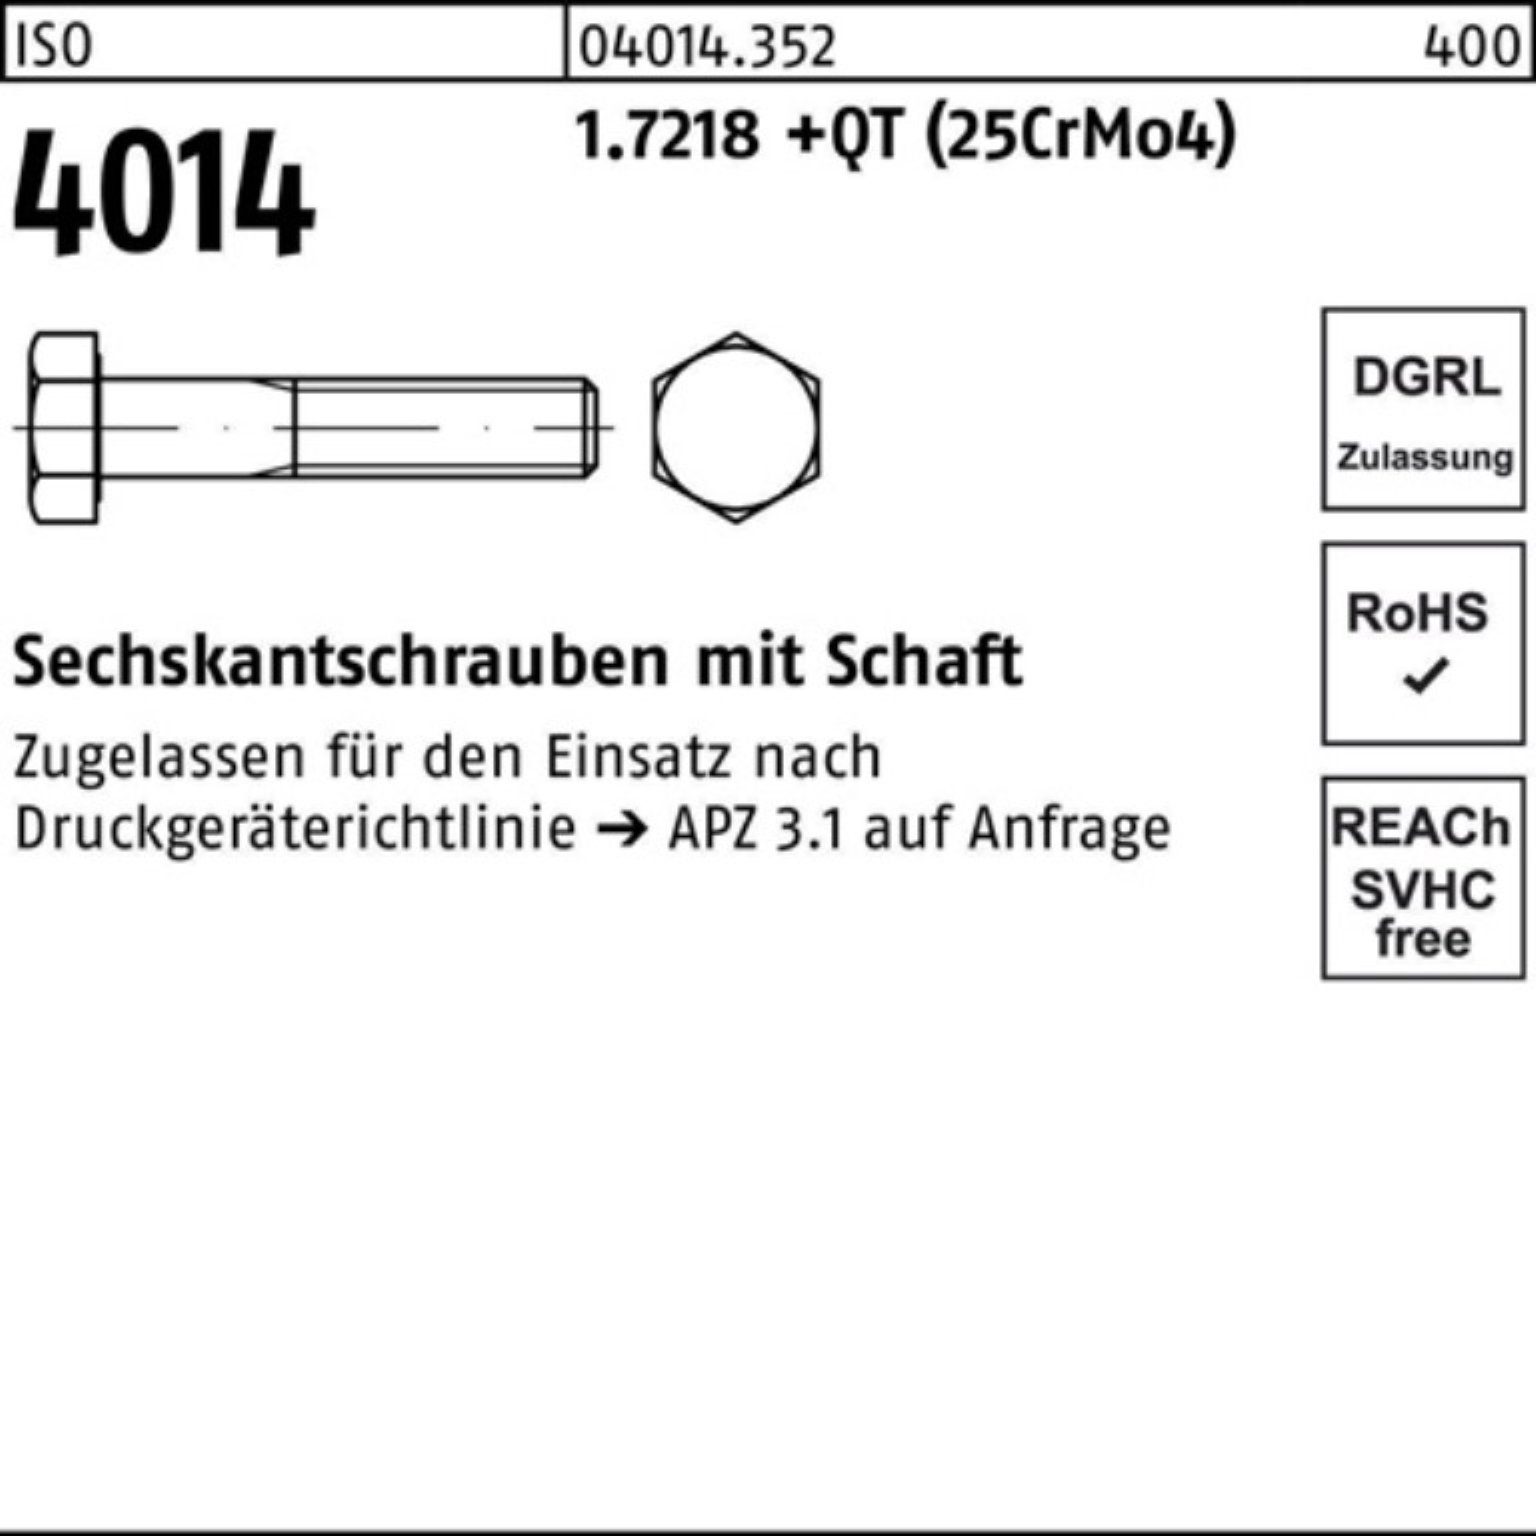 Sechskantschraube Pack 4014 Sechskantschraube +QT (25Cr ISO 100er M20x Bufab 1.7218 Schaft 180